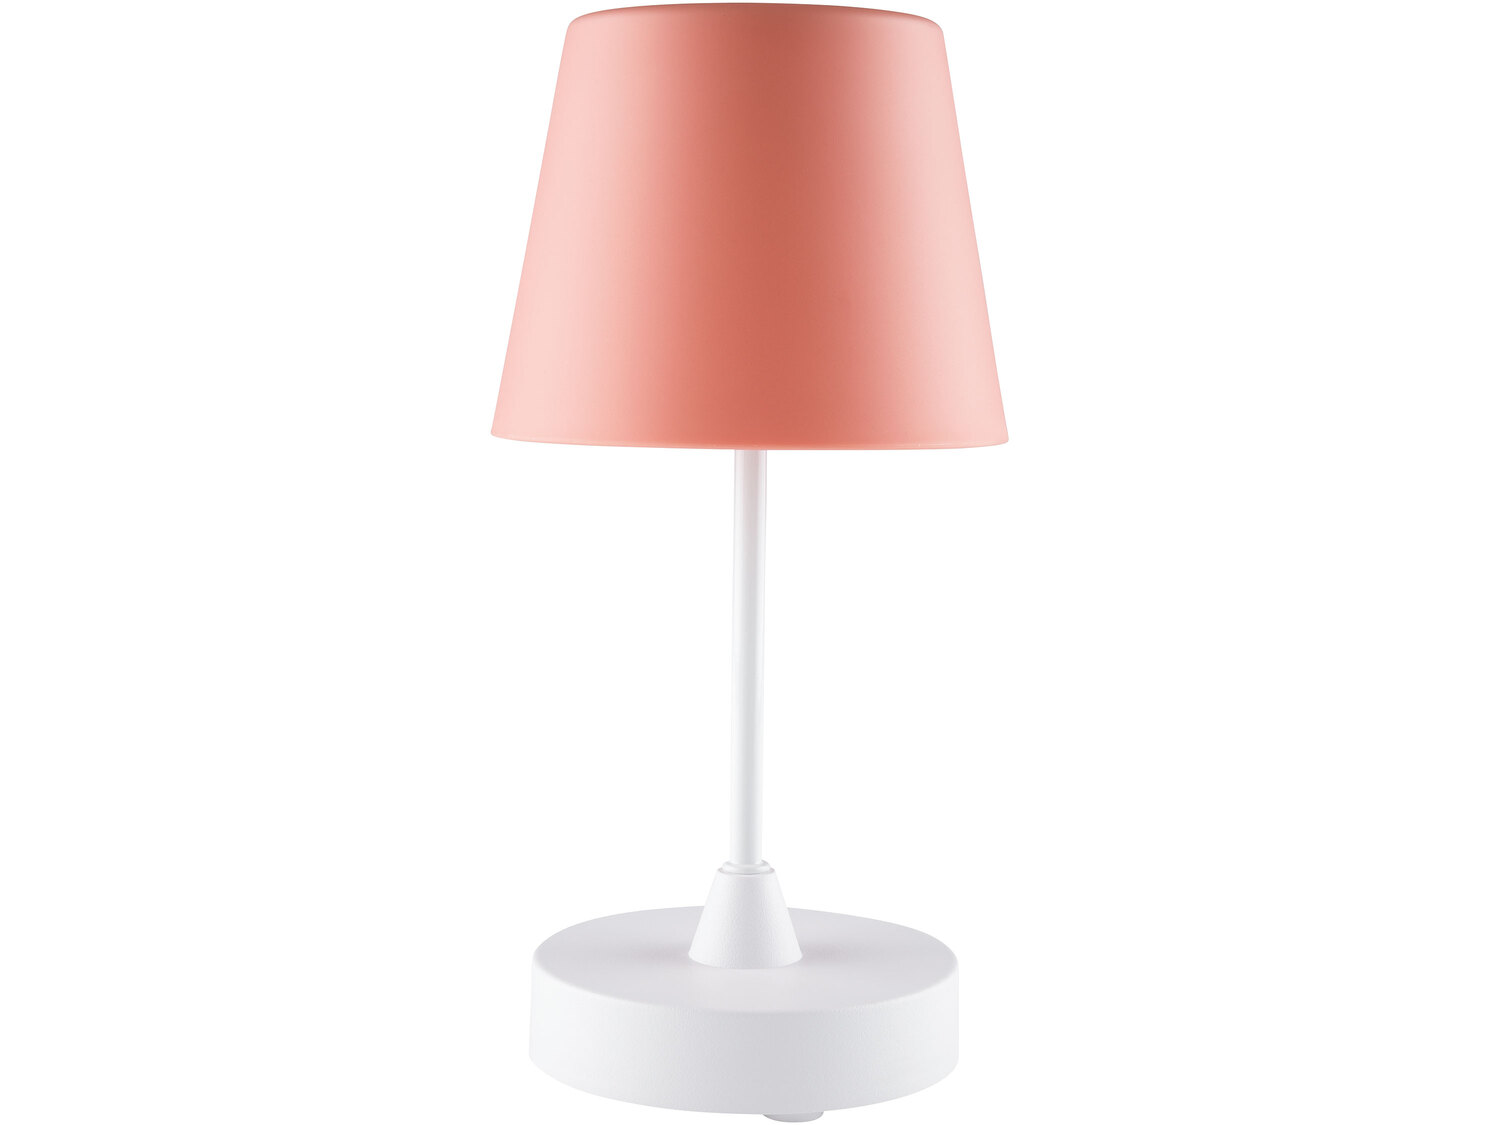 Akumulatorowa lampka stołowa Livarno, cena 59,90 PLN 
- w zestawie 2 wymienne ...